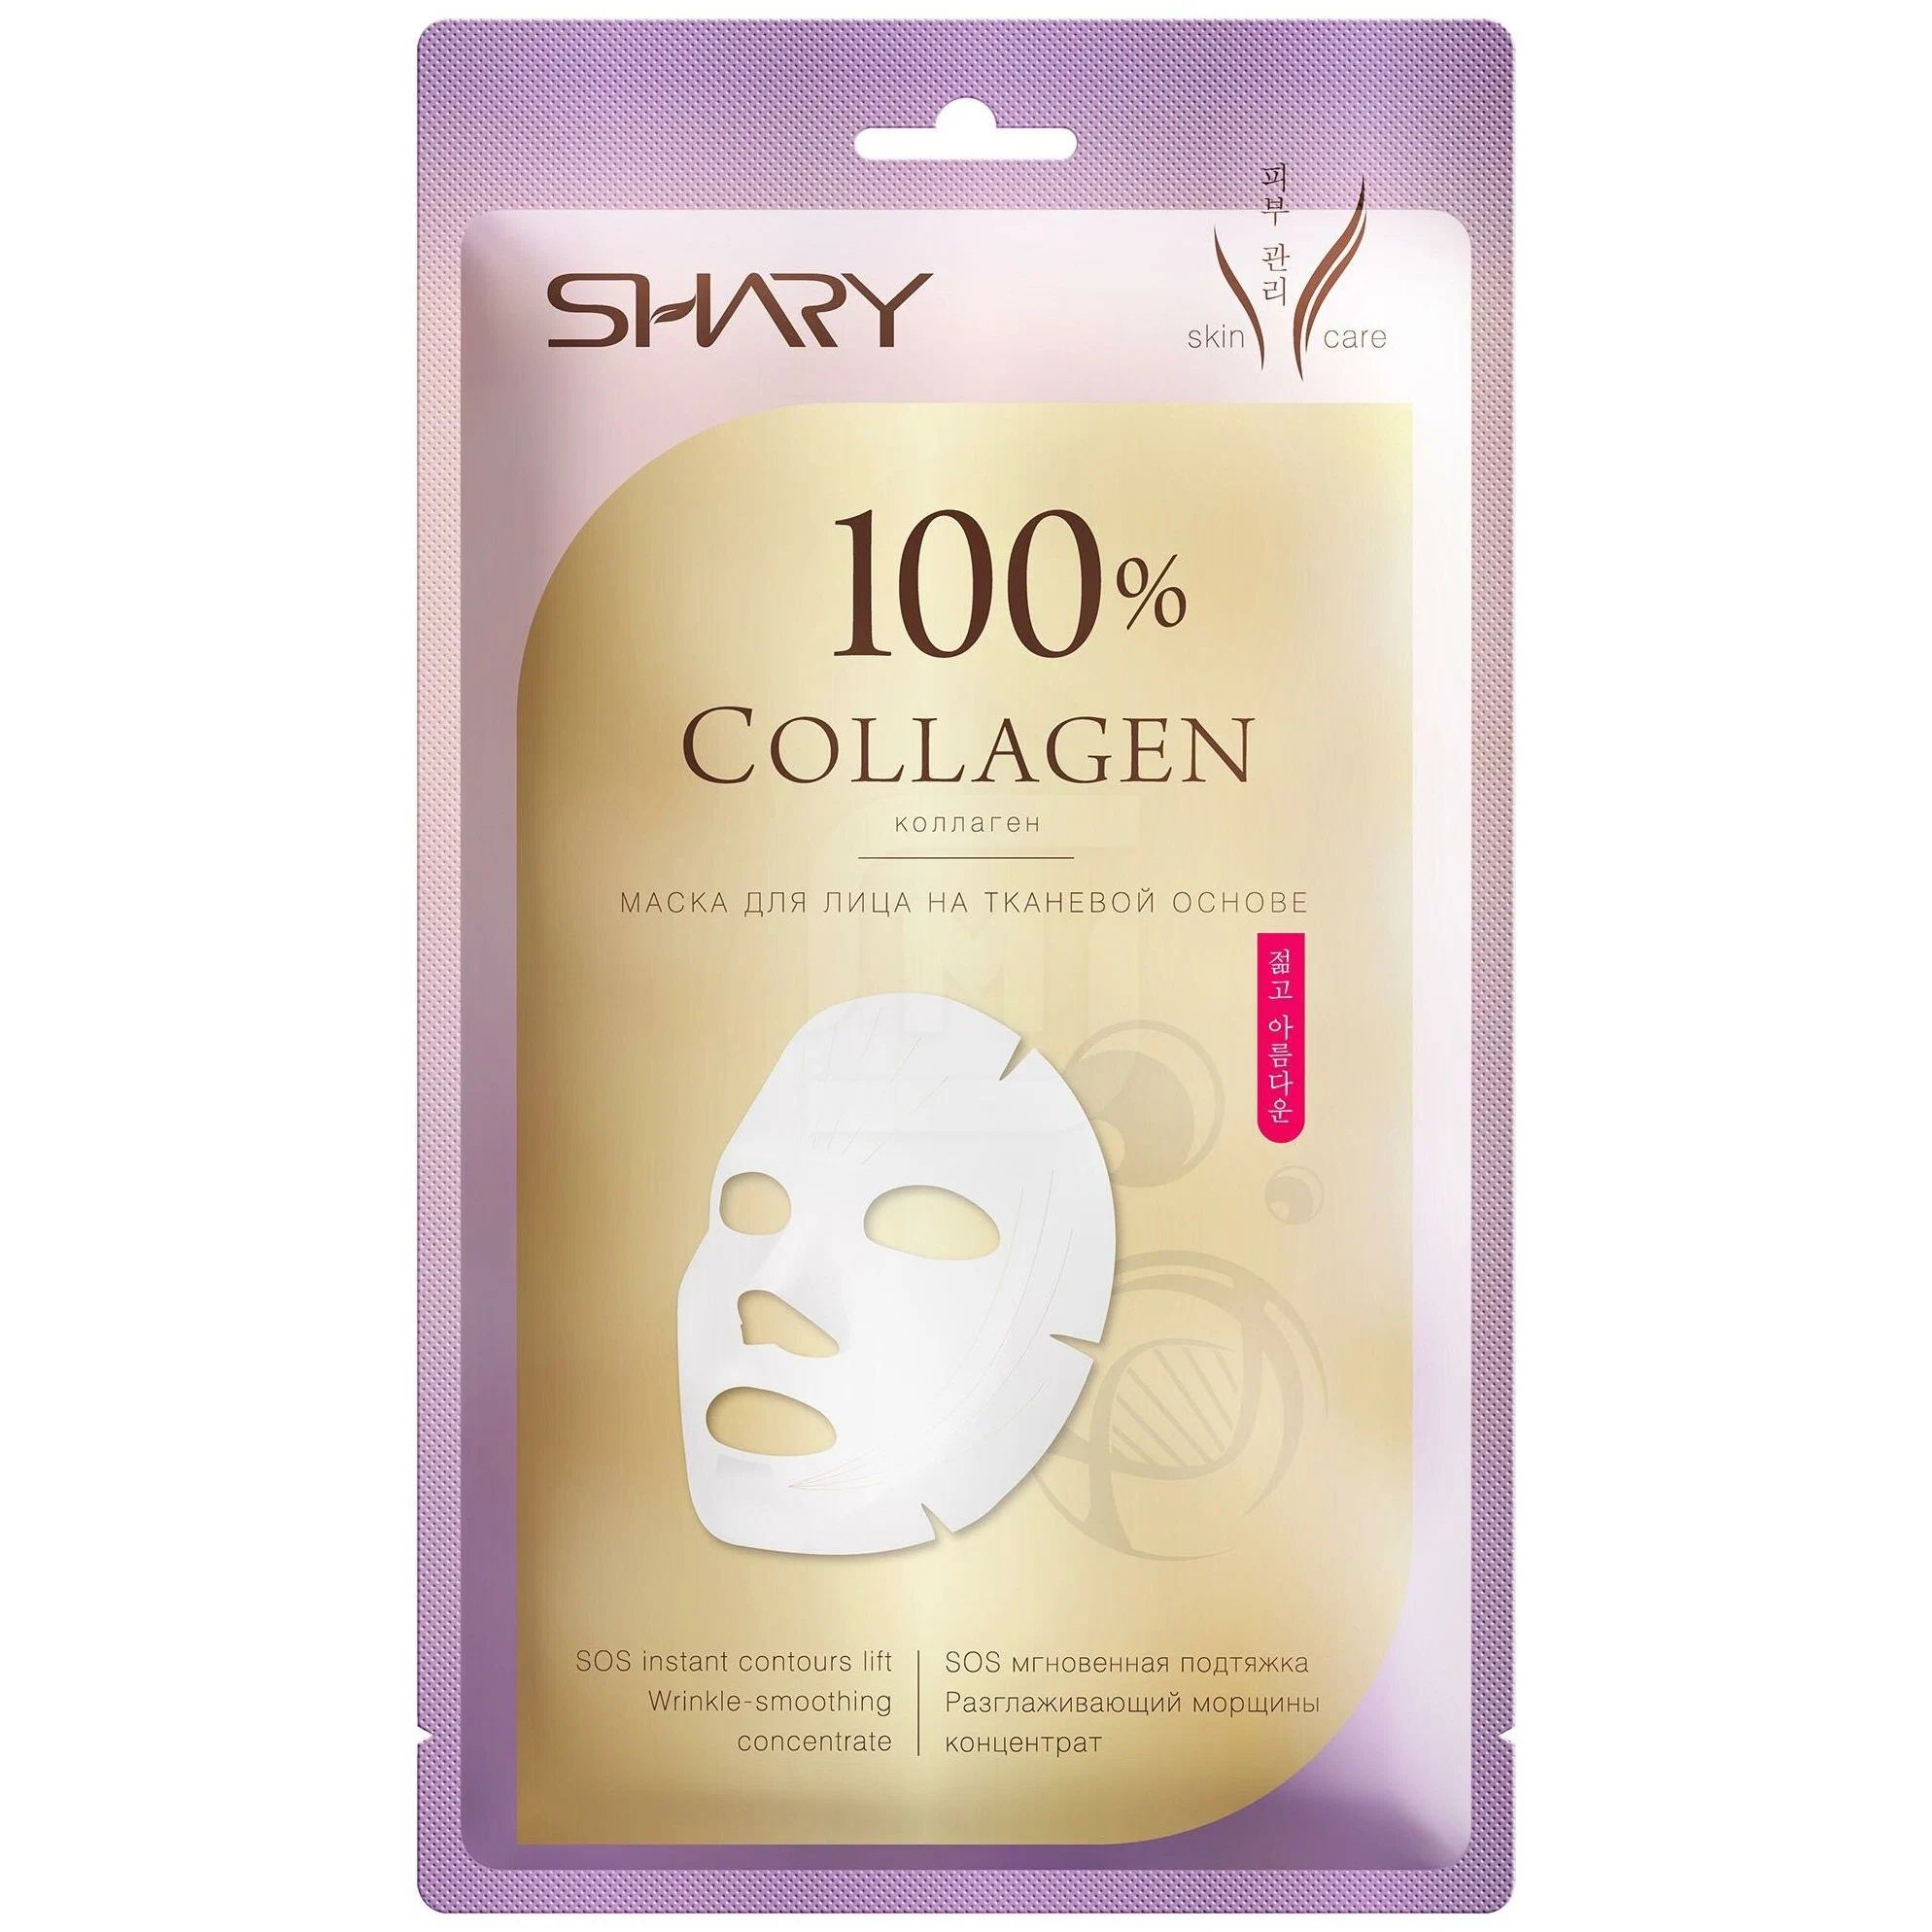 Маска для лица SHARY 100% Коллаген, на тканевой основе, 20 г philosophy три кита профессионализма маска для лица на тканевой основе гиалуроновая acne 30